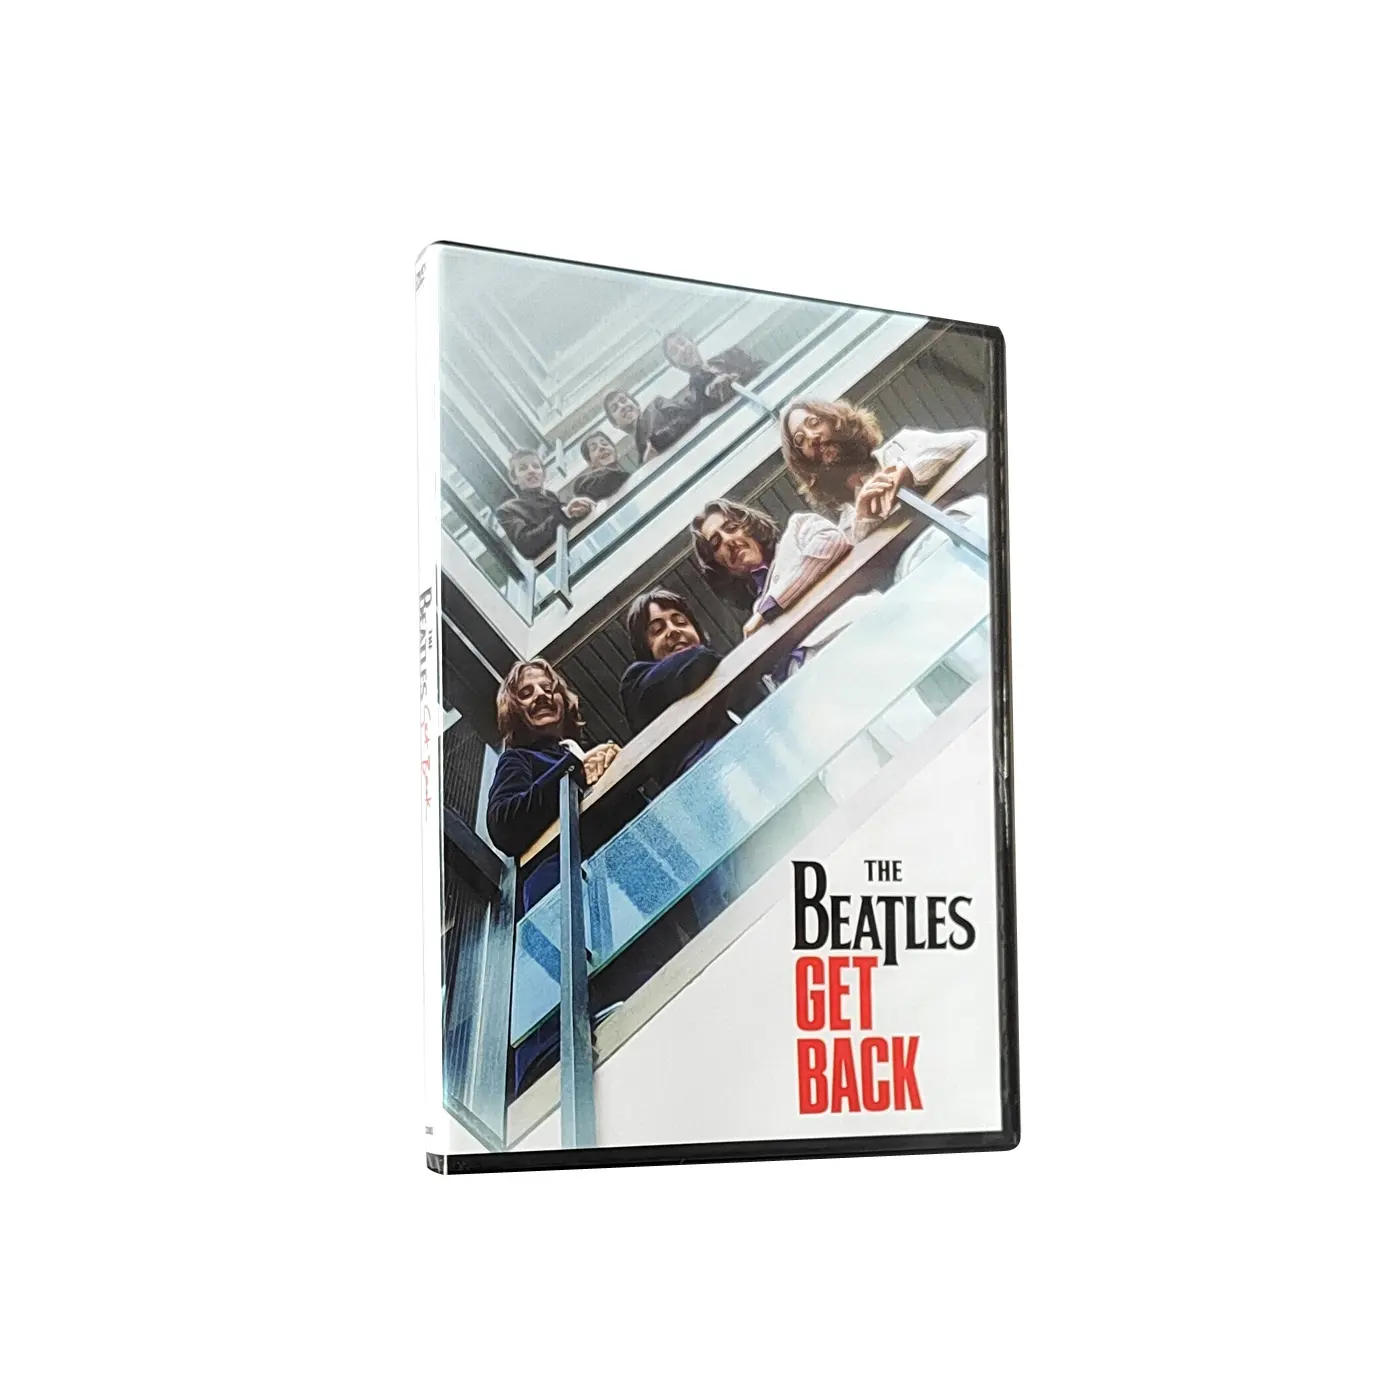 Satın yeni çin ücretsiz kargo fabrika DVD kutulu setleri Film Film Disk çoğaltma baskı TV gösterisi Beatles geri almak 3 Disk